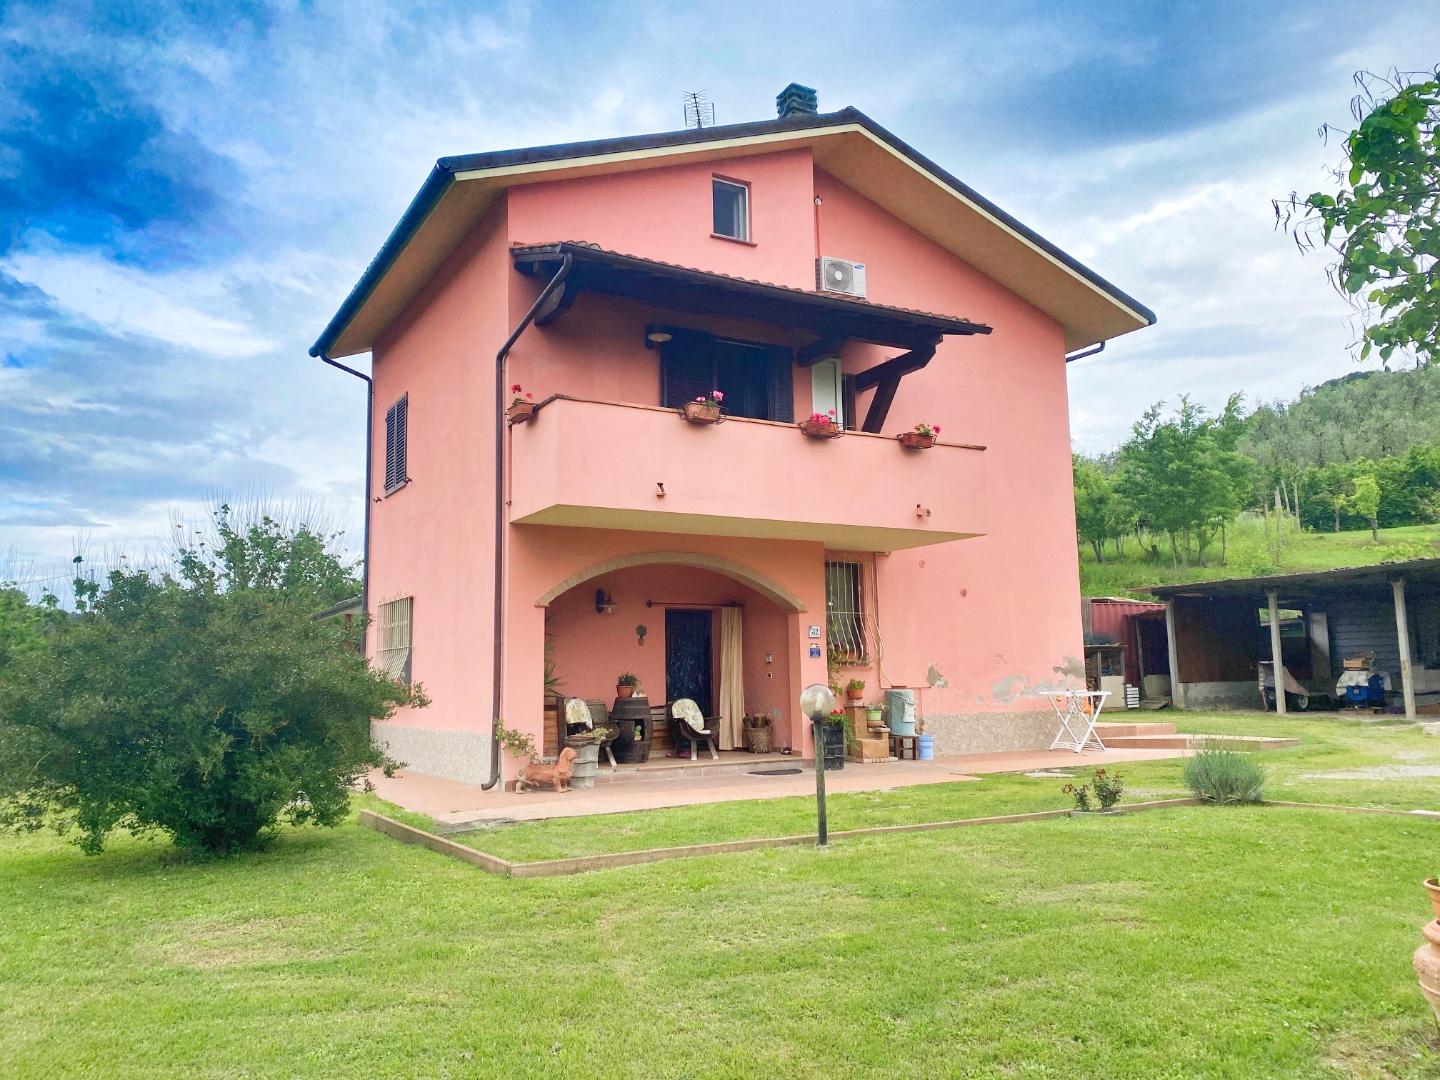 Villa Bifamiliare in vendita a San Miniato, 6 locali, prezzo € 380.000 | PortaleAgenzieImmobiliari.it